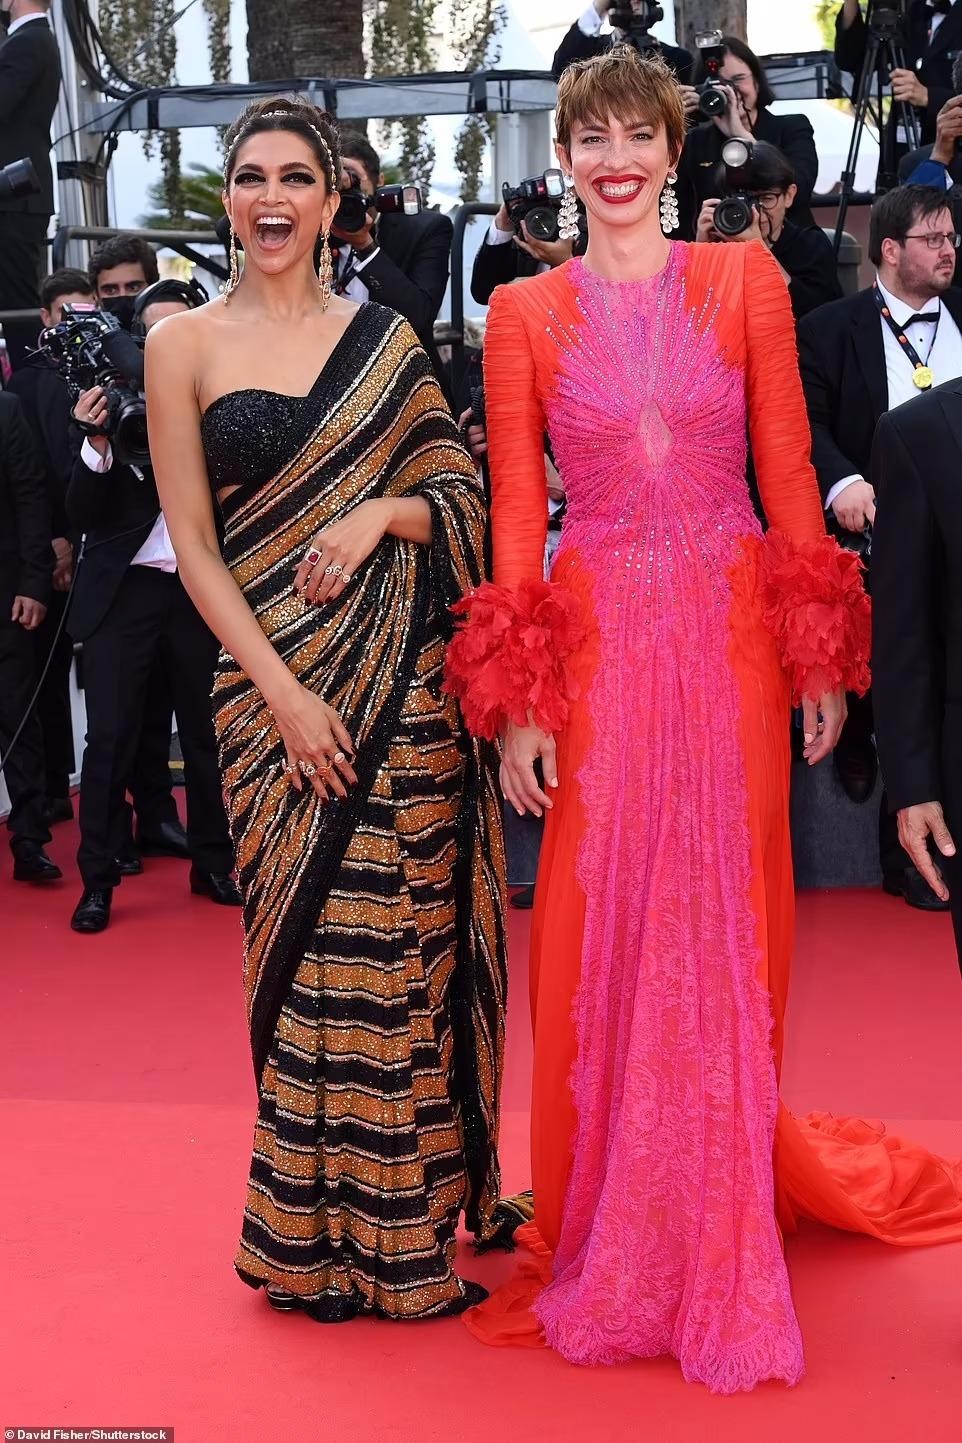 Thảm đỏ Cannes: Người mẫu Pháp Didi Stone 'hở bạo' khi diện mốt ngực trần ảnh 3